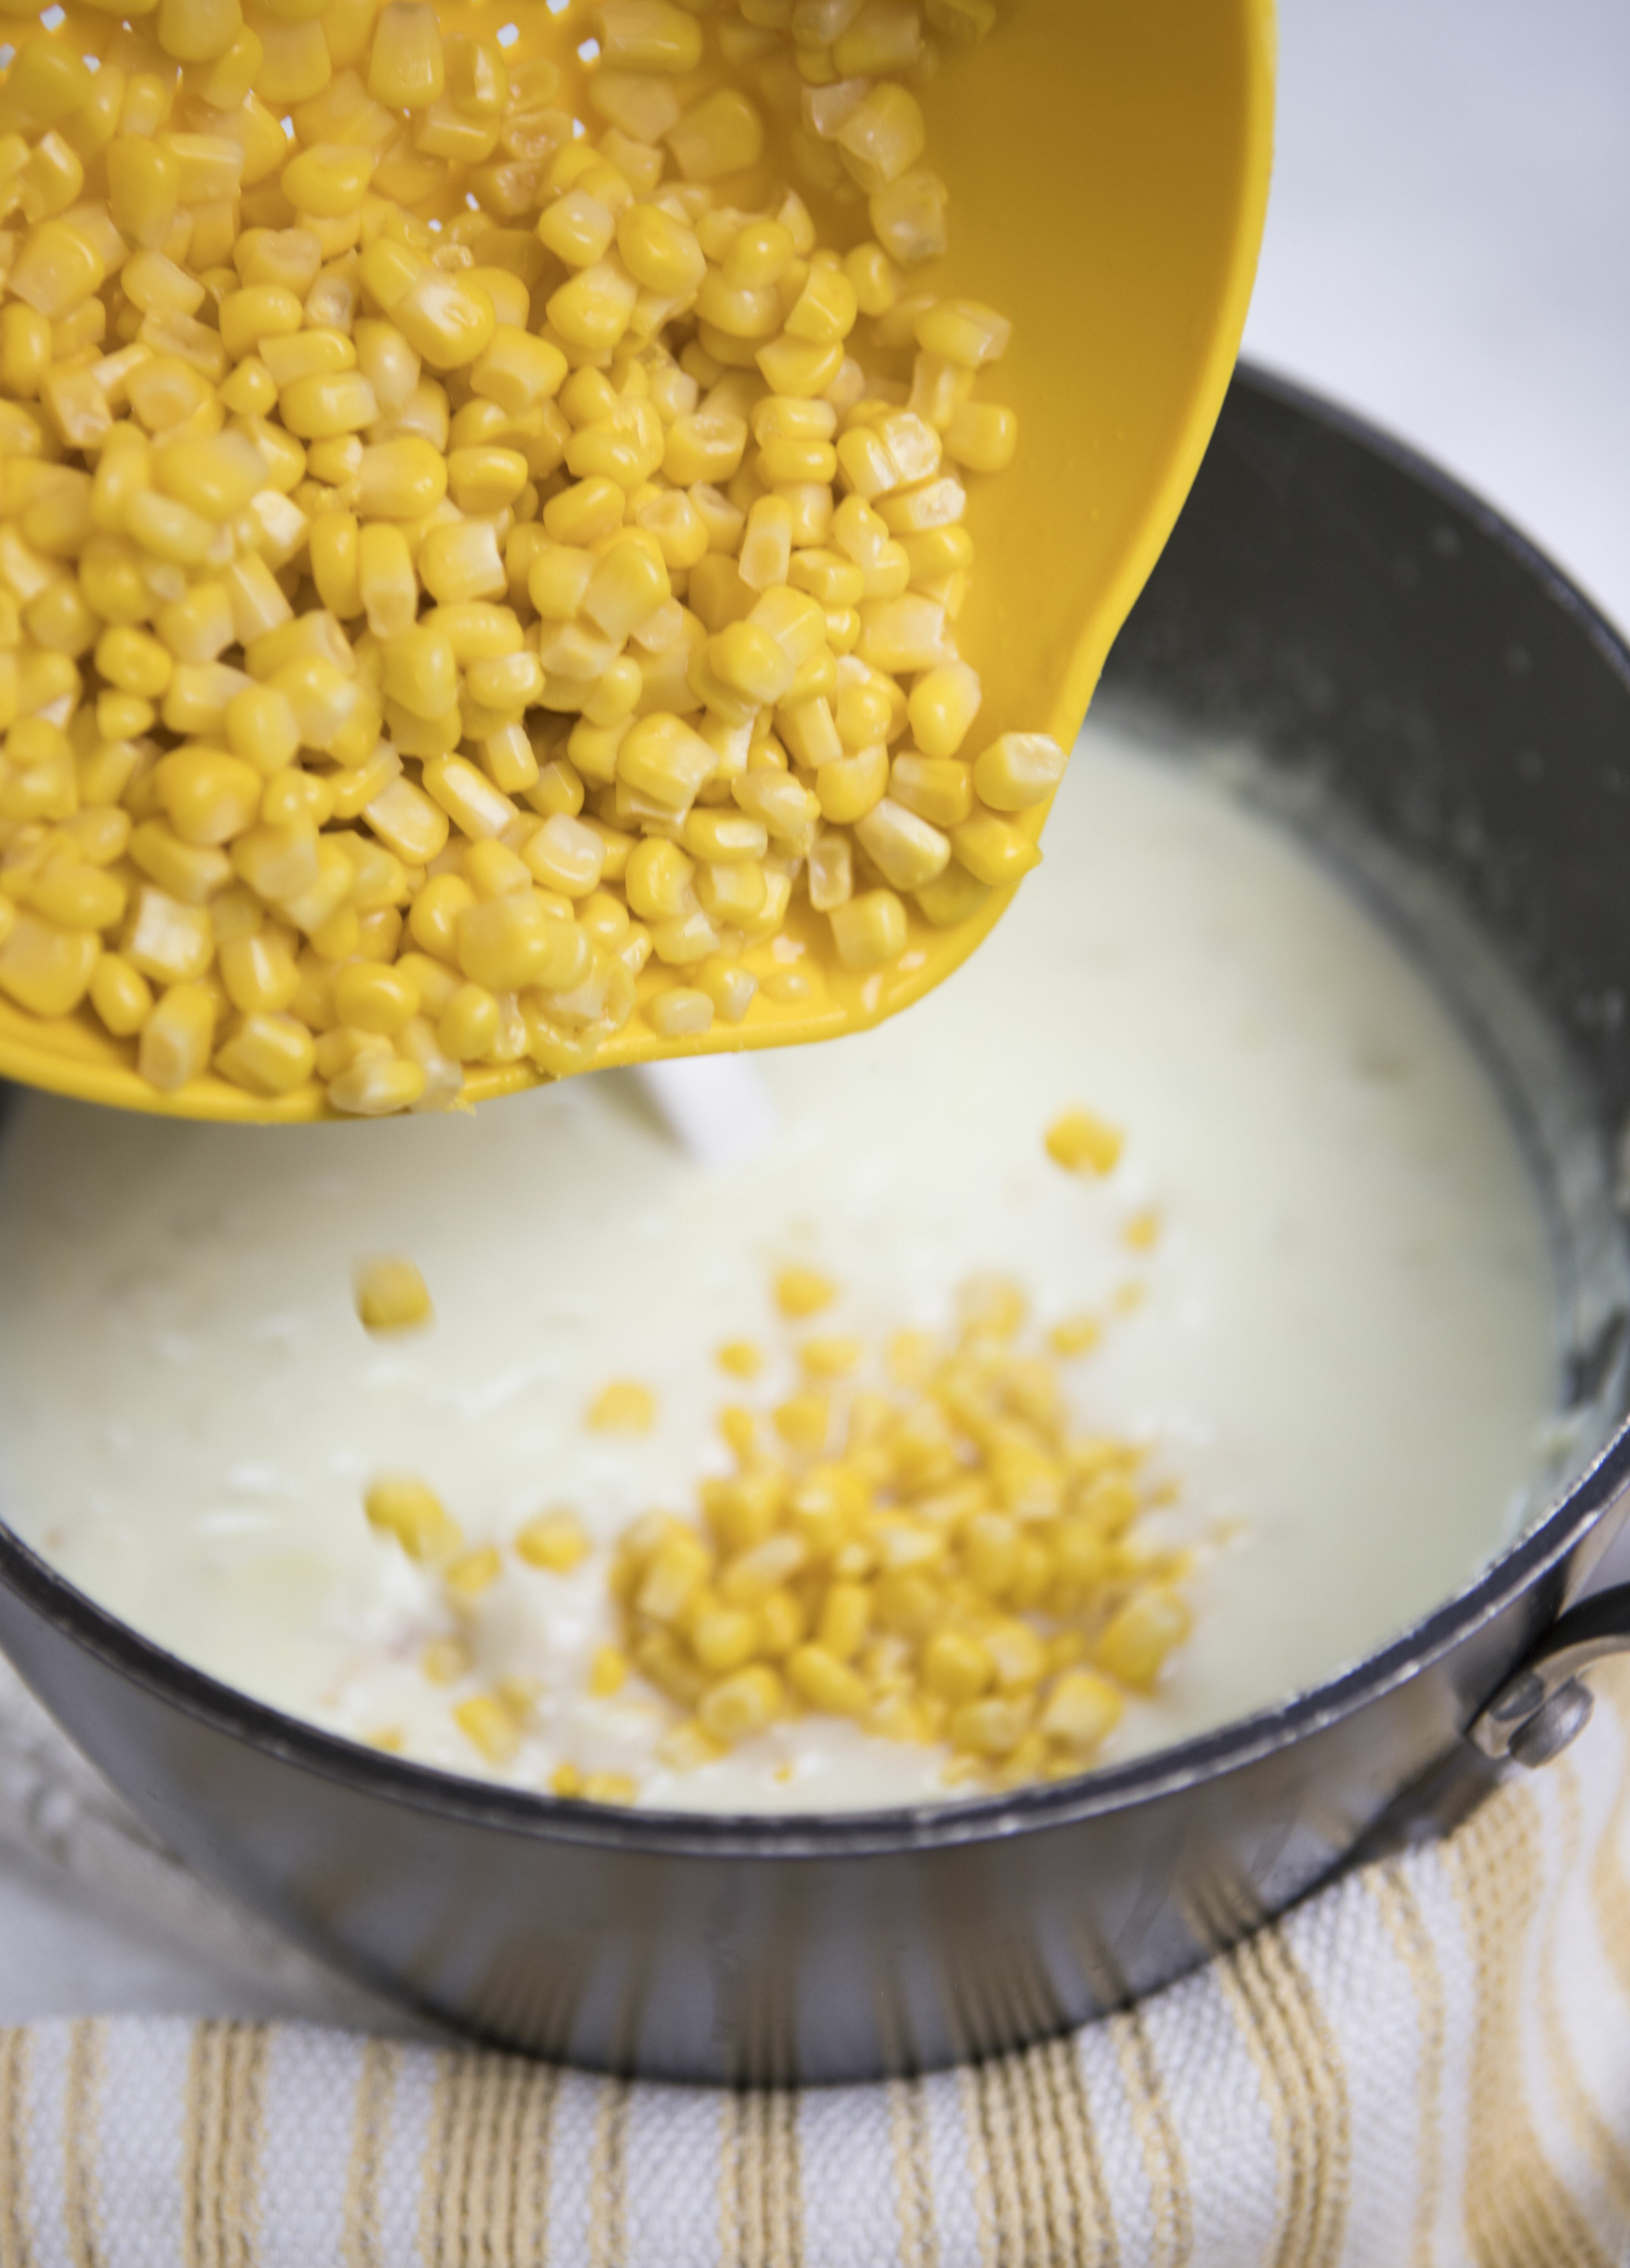 Adding corn to creamy corn chowder